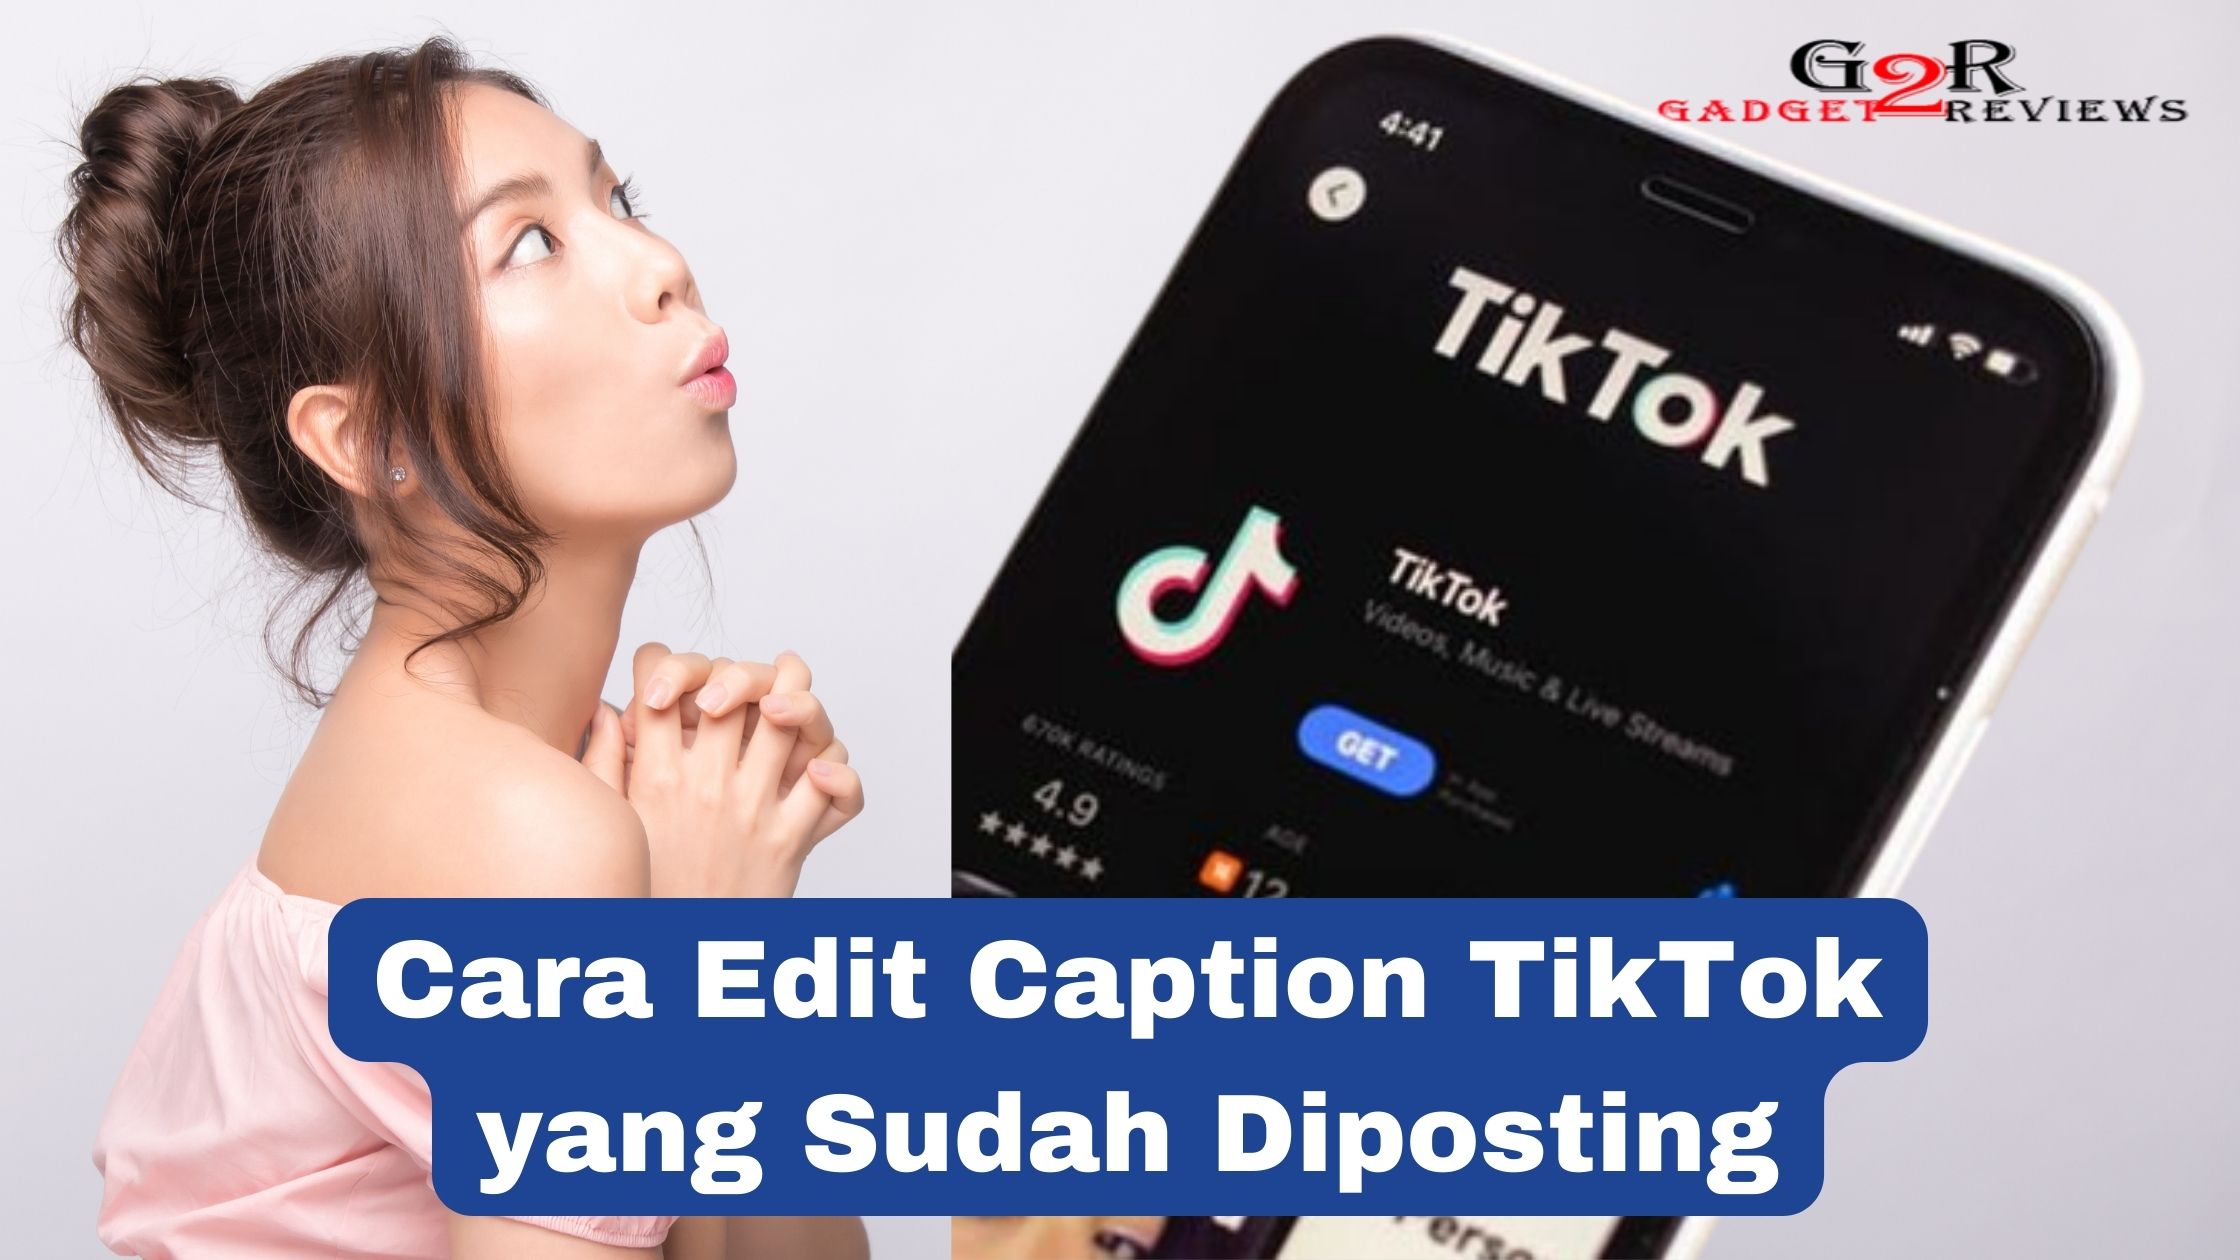 Cara Edit Caption TikTok yang Sudah Diposting Dengan Mudah